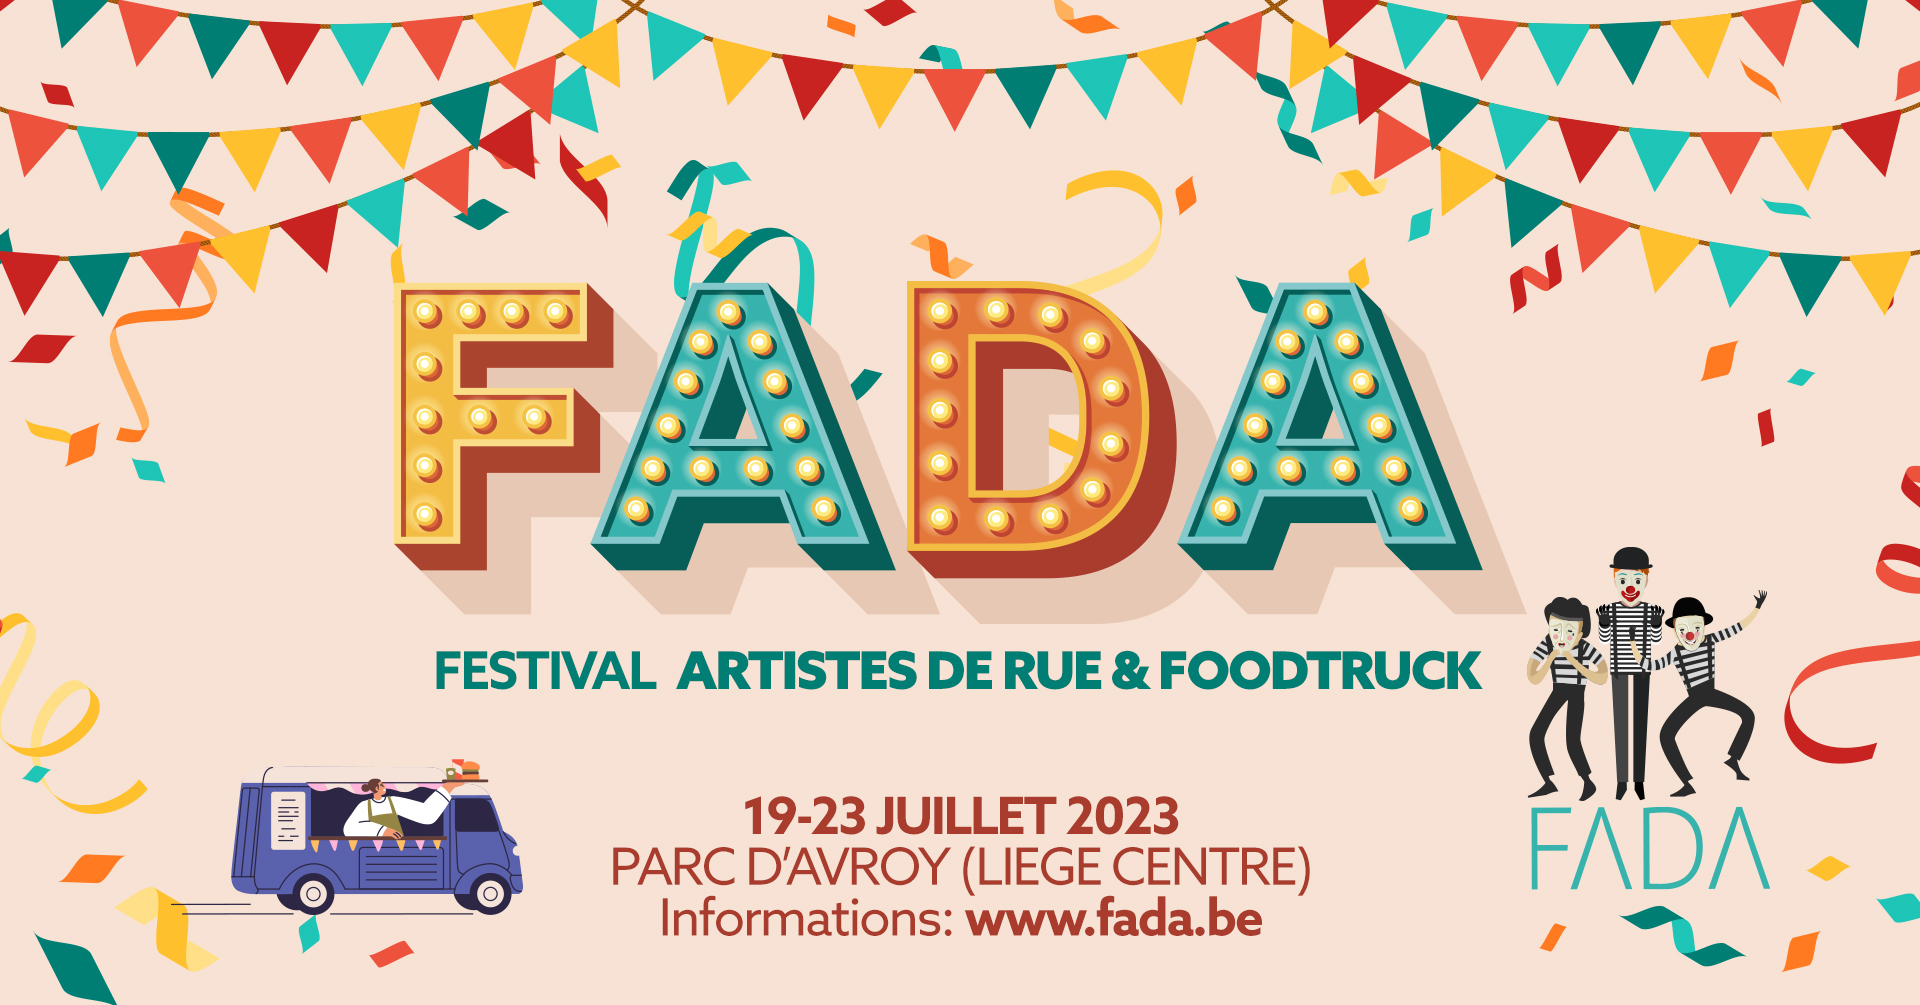 FADA | Festival Artistes de rue & Foodtrucks au Parc d'Avroy à LIEGE